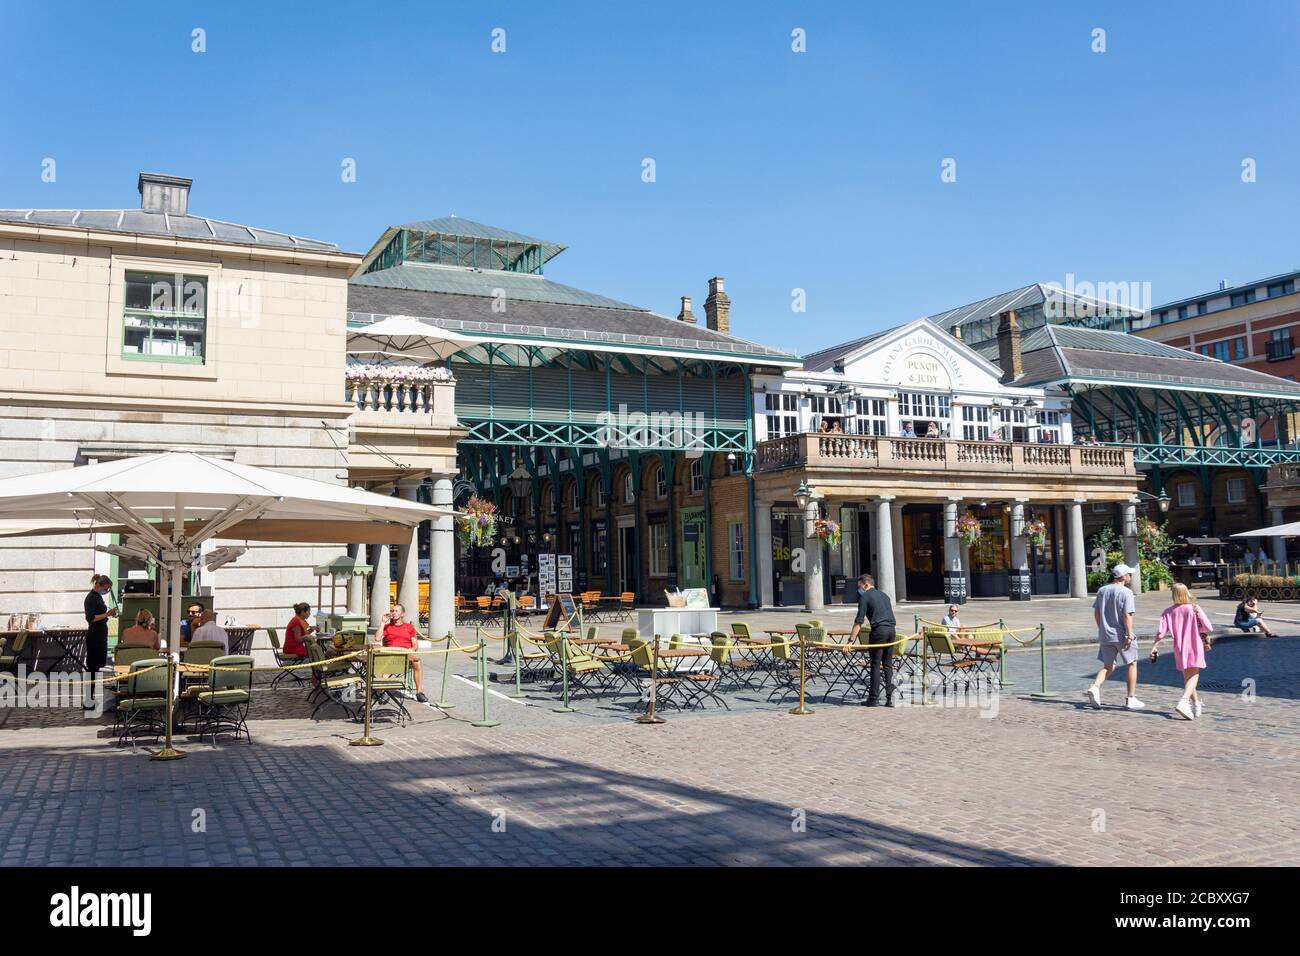 Mercato di Covent Garden Square, Covent Garden, la City of Westminster, Greater London, England, Regno Unito Foto Stock